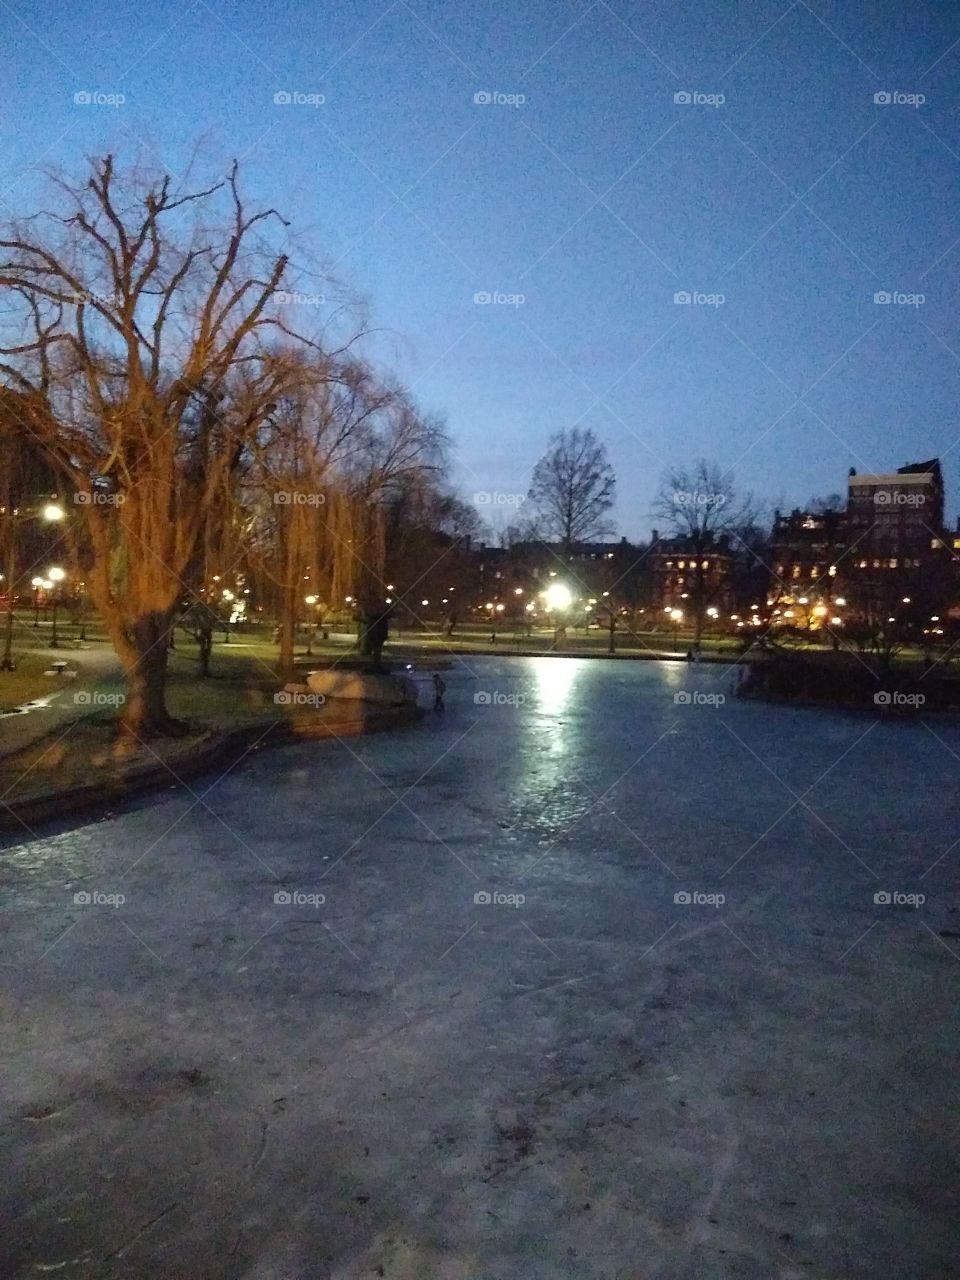 Icy Boston at Night - Common Area - Public Park - Boston, Massachusetts